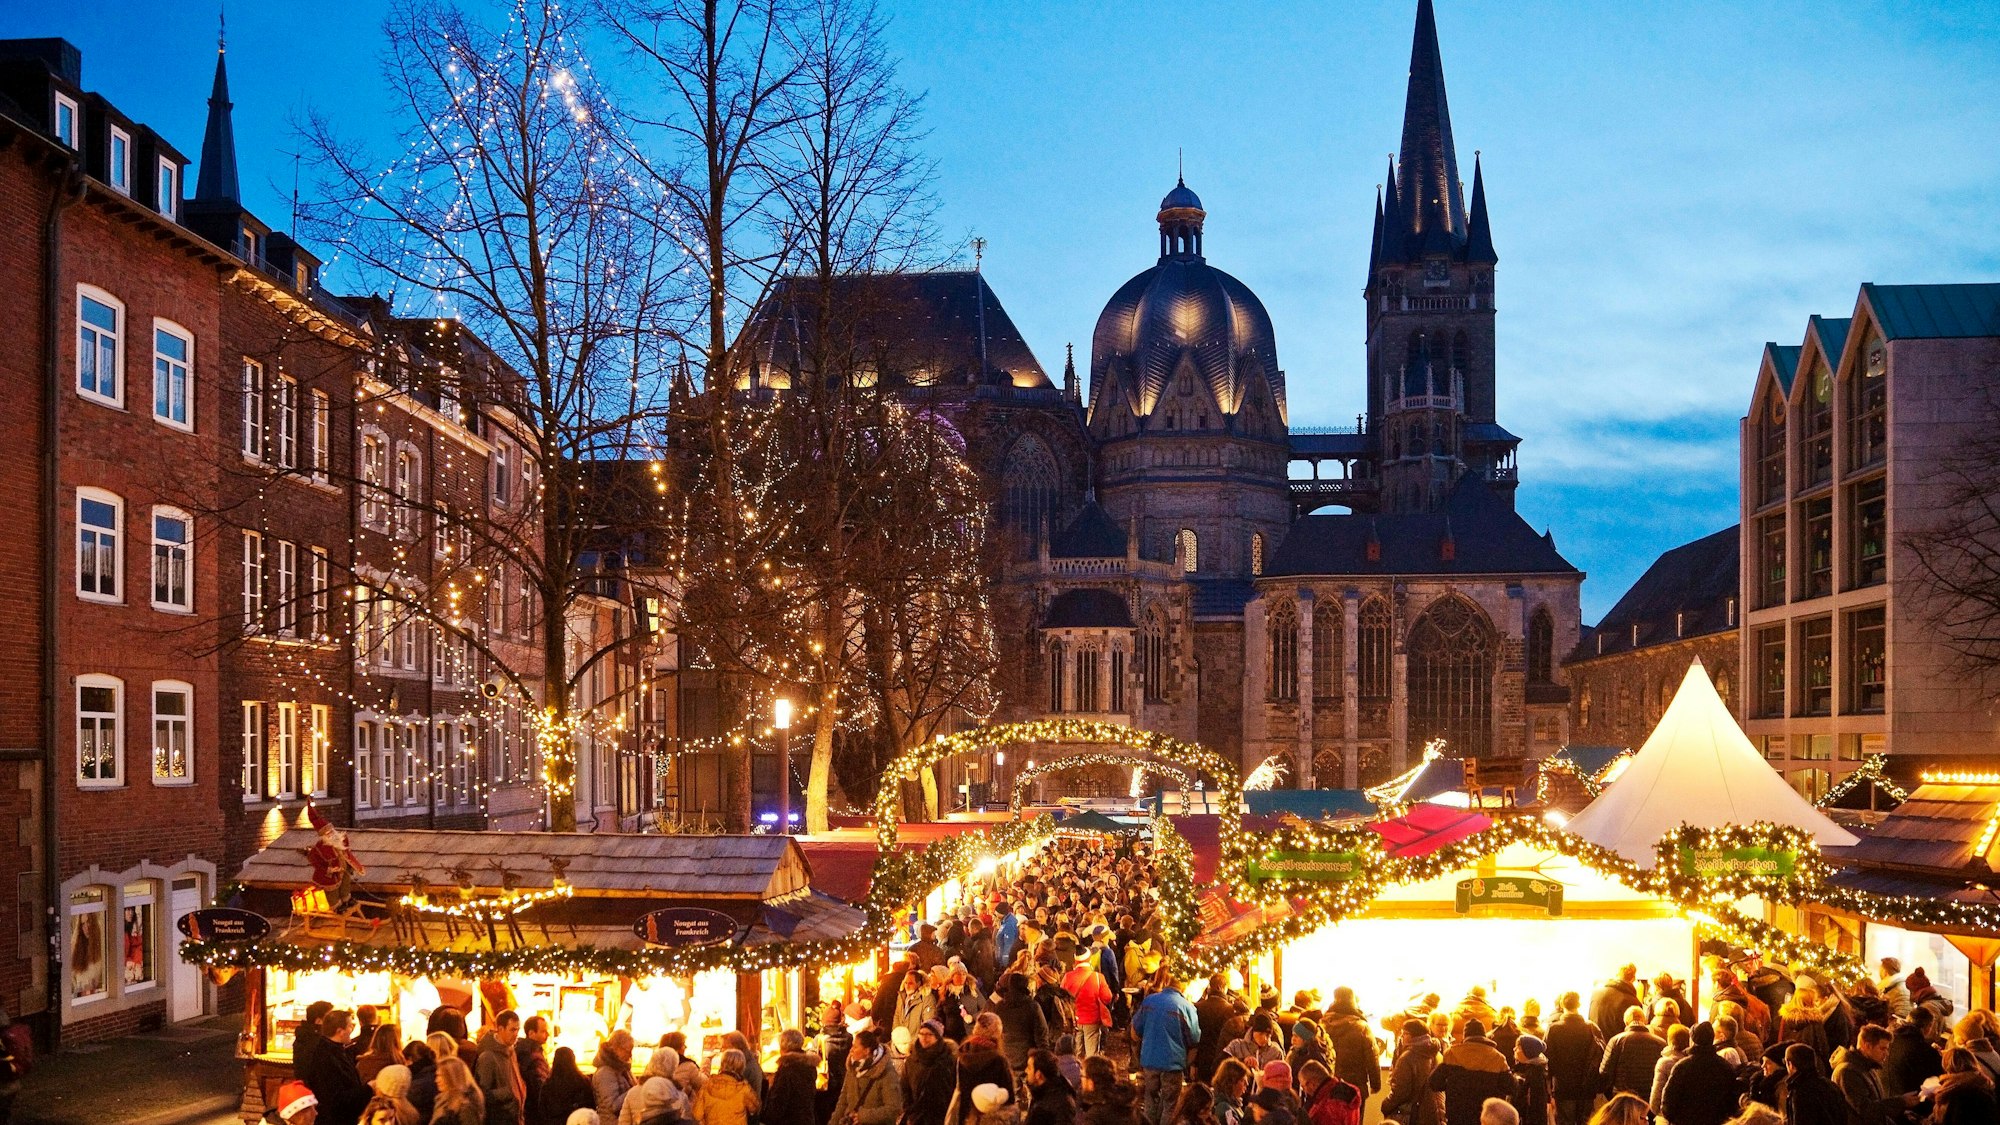 Weihnachtsmarkt am Abend vor dem Dom in Aachen